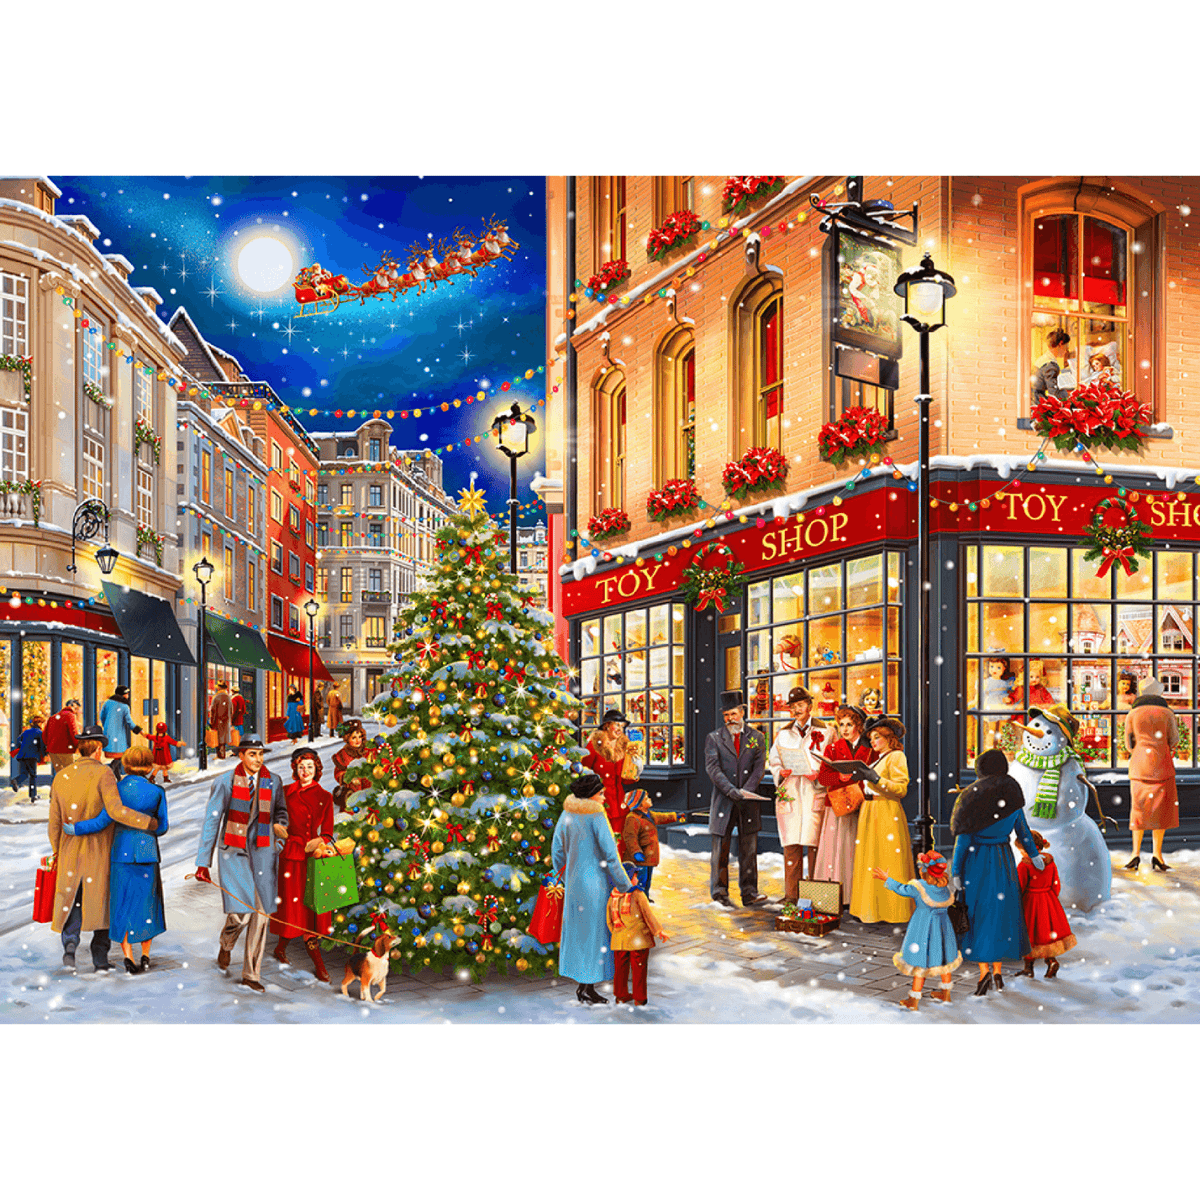 Route de Noël - Le temps des puzzles festifs ! 🎄